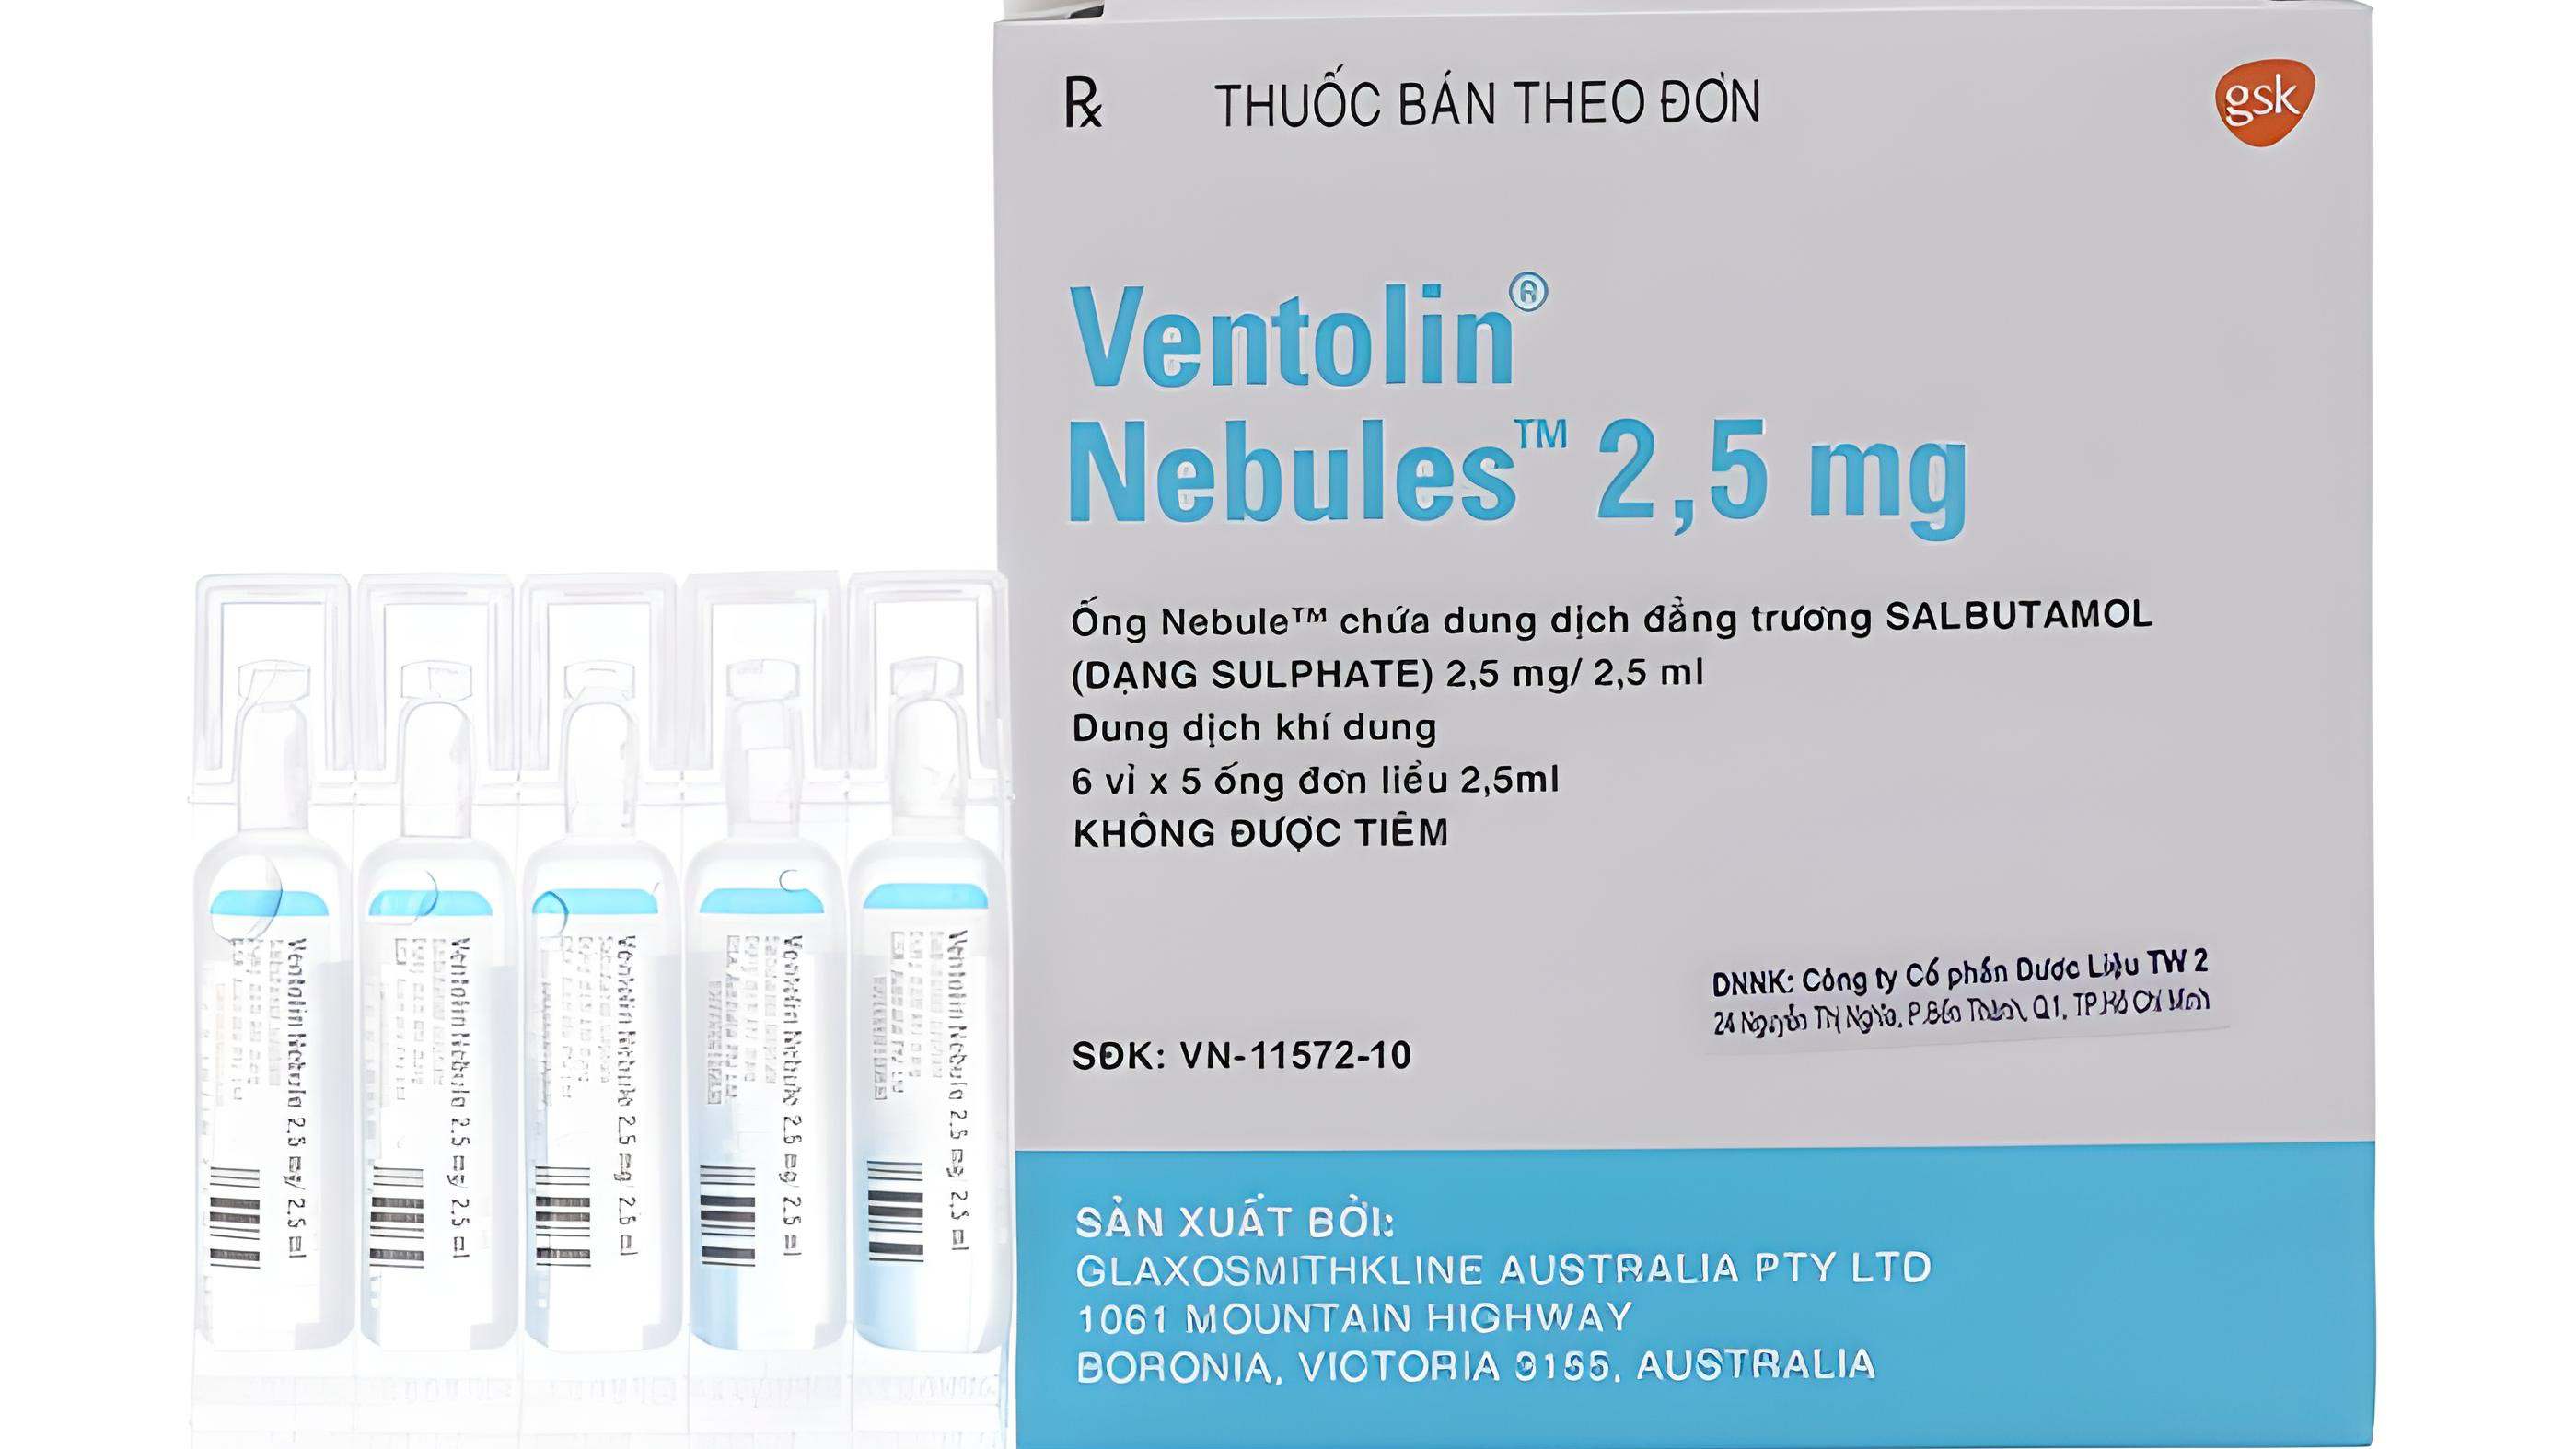 Thuốc xông khí dung Ventolin được sử dụng để điều trị những bệnh gì?
